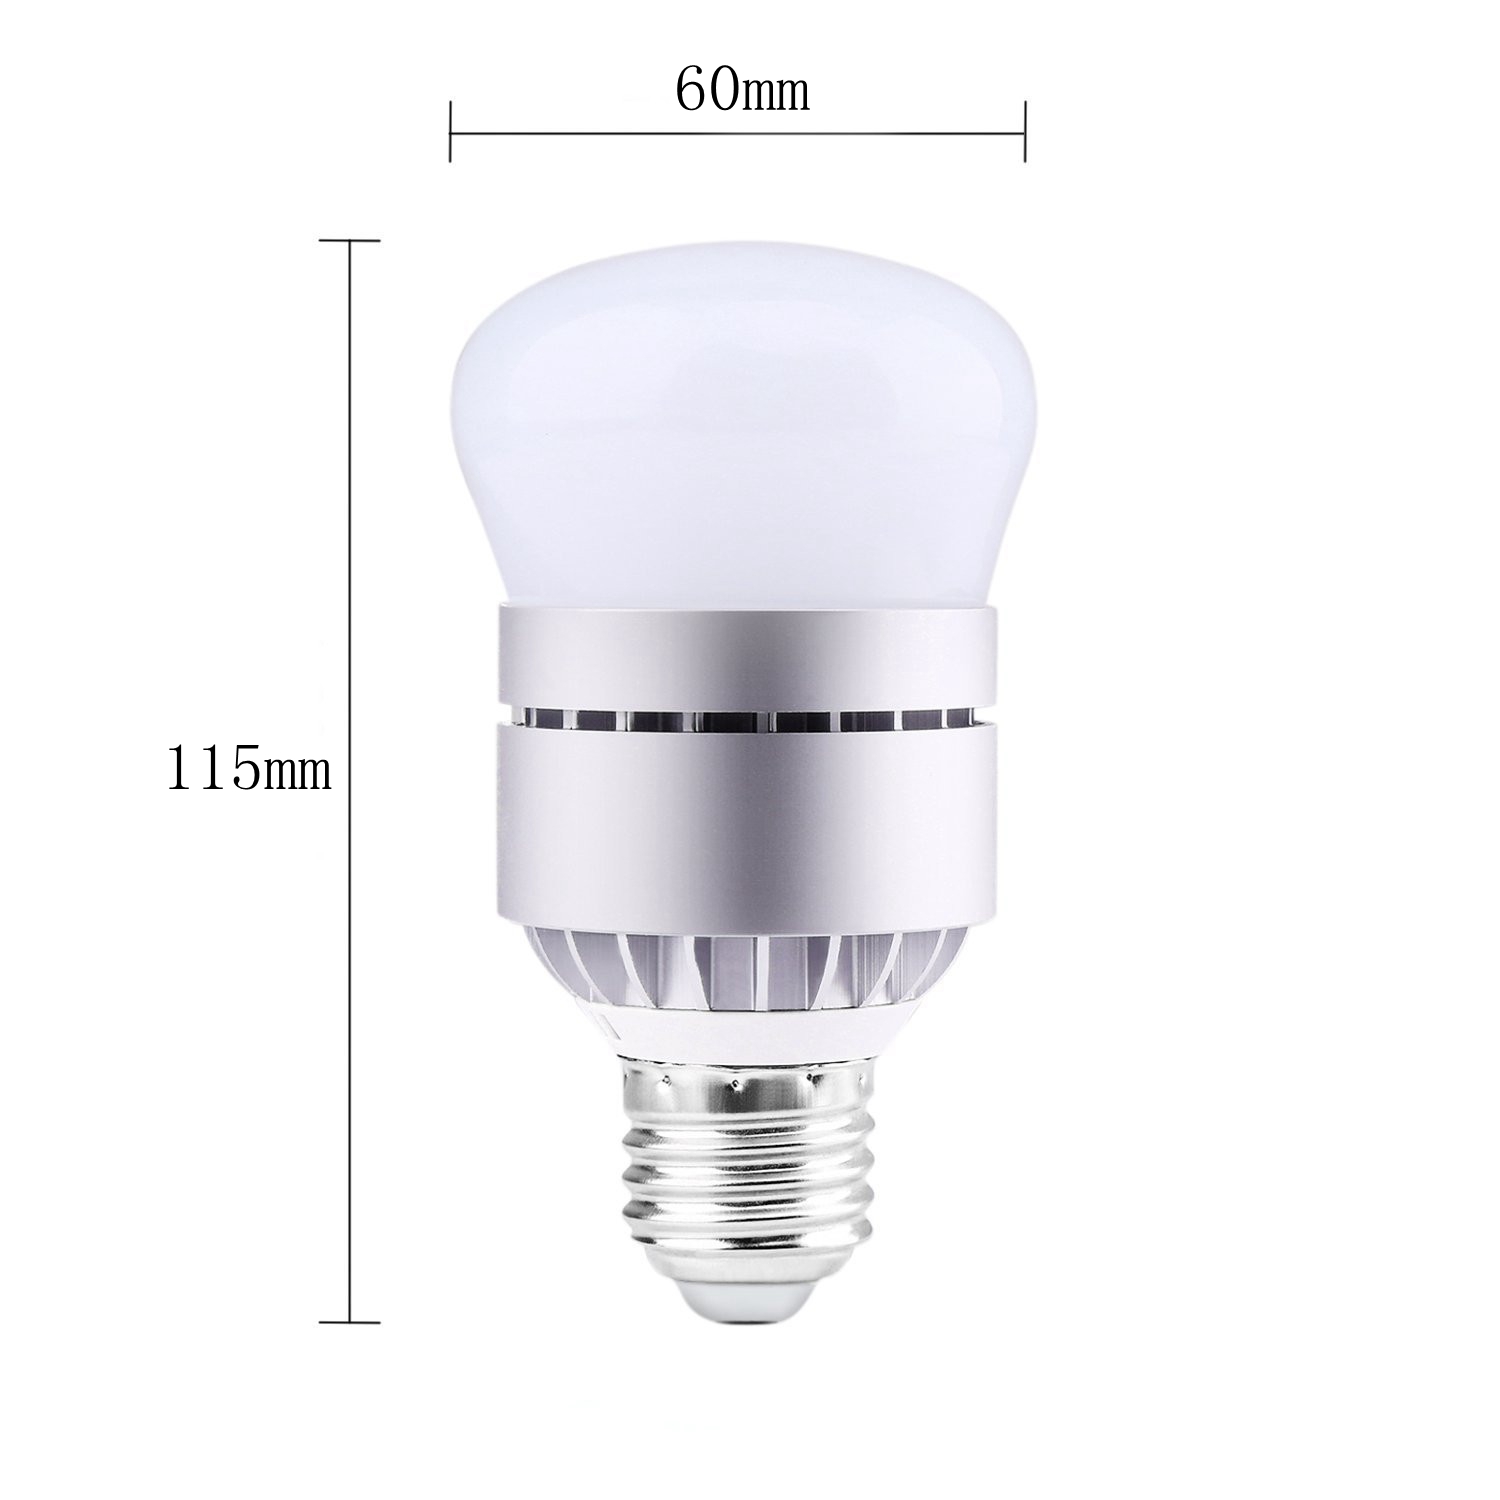 ARILUXreg-7W-E27B22-Dusk-to-Dawn-Auto-ONOFF-LED-Sensor-Light-Bulb-for-Patio-Garage-AC85-265V-1280315